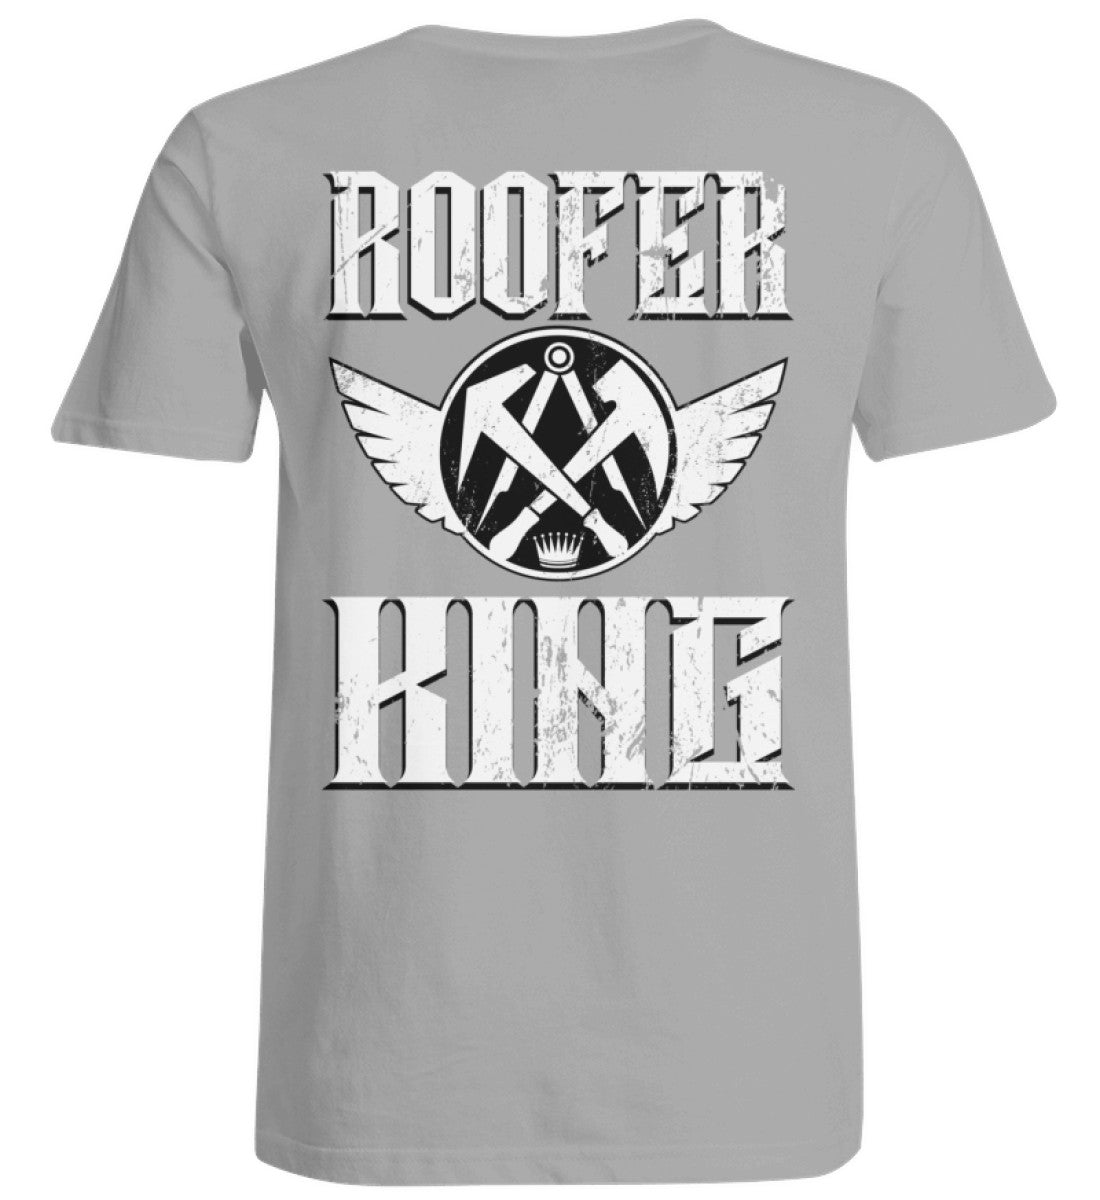 Dachdecker T-Shirt / Rooferking  - Übergrößenshirt €26.95 Rooferking